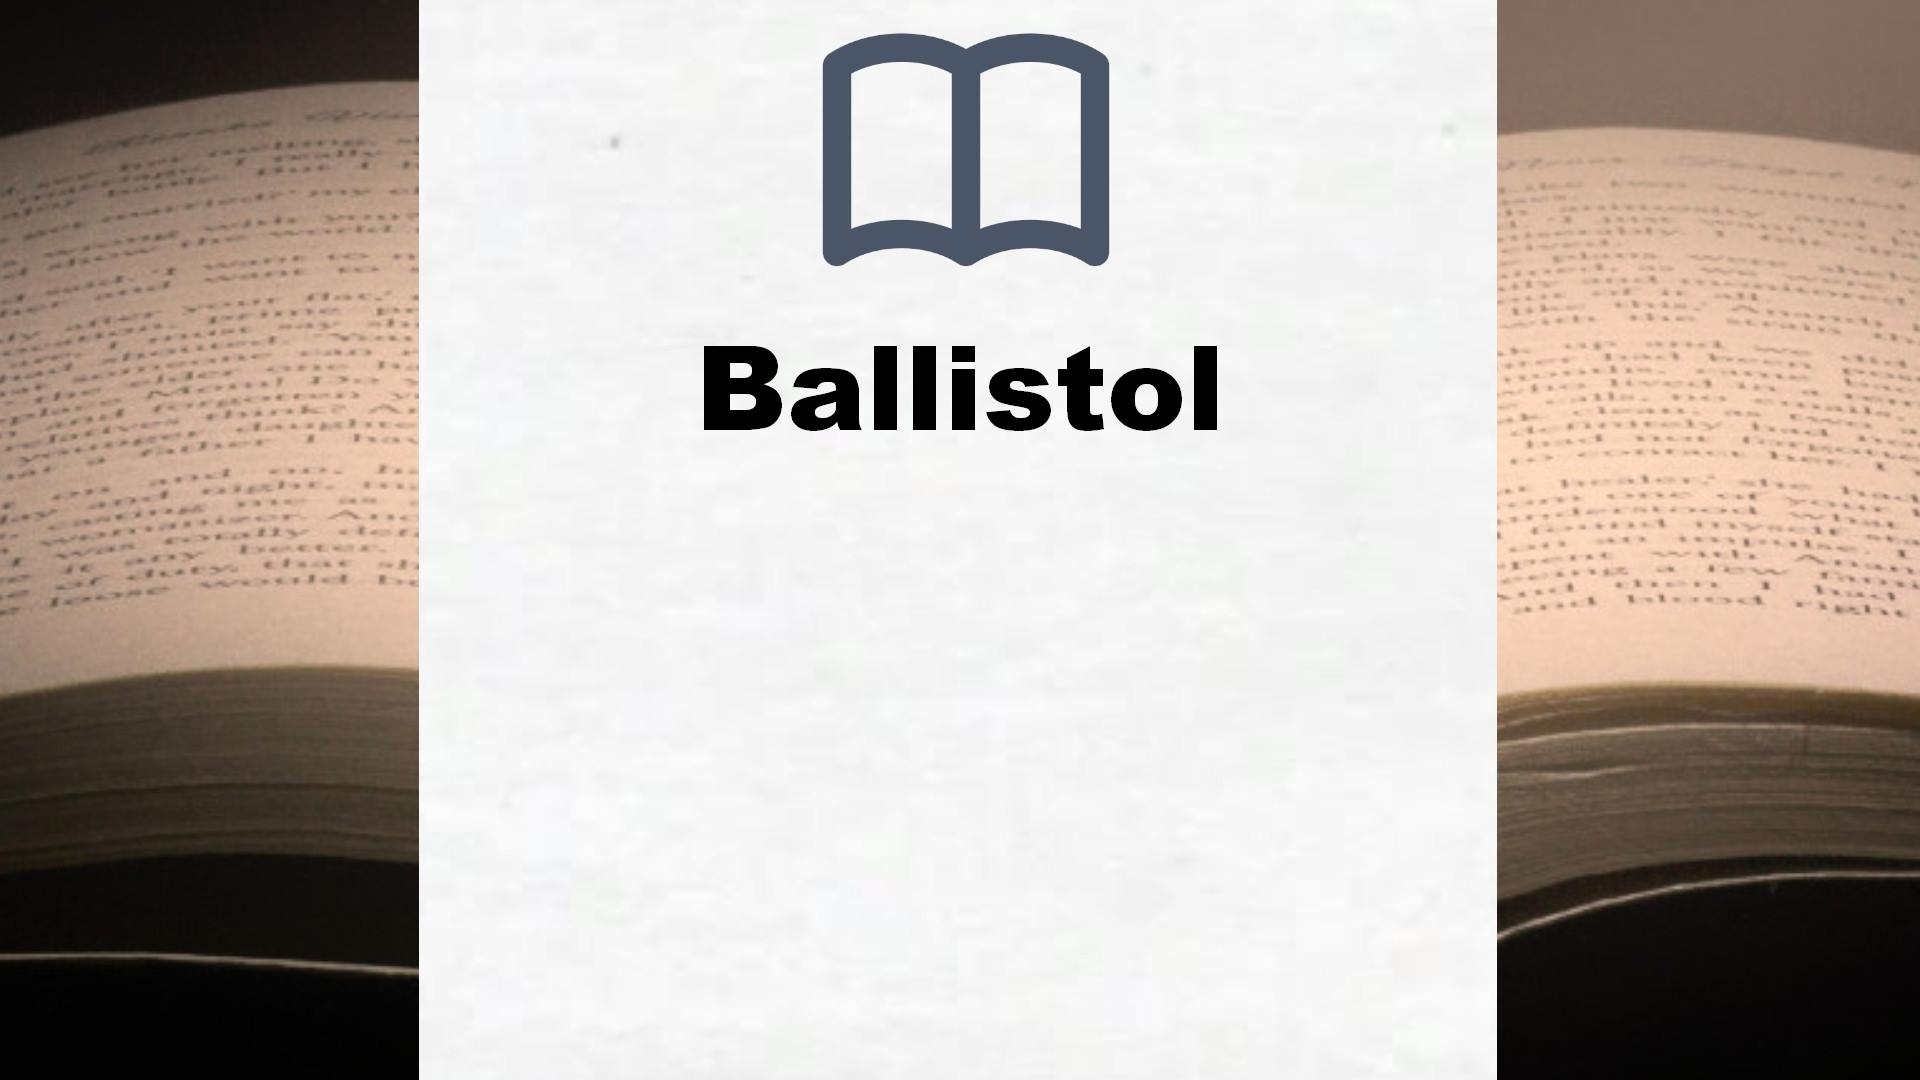 Bücher über Ballistol